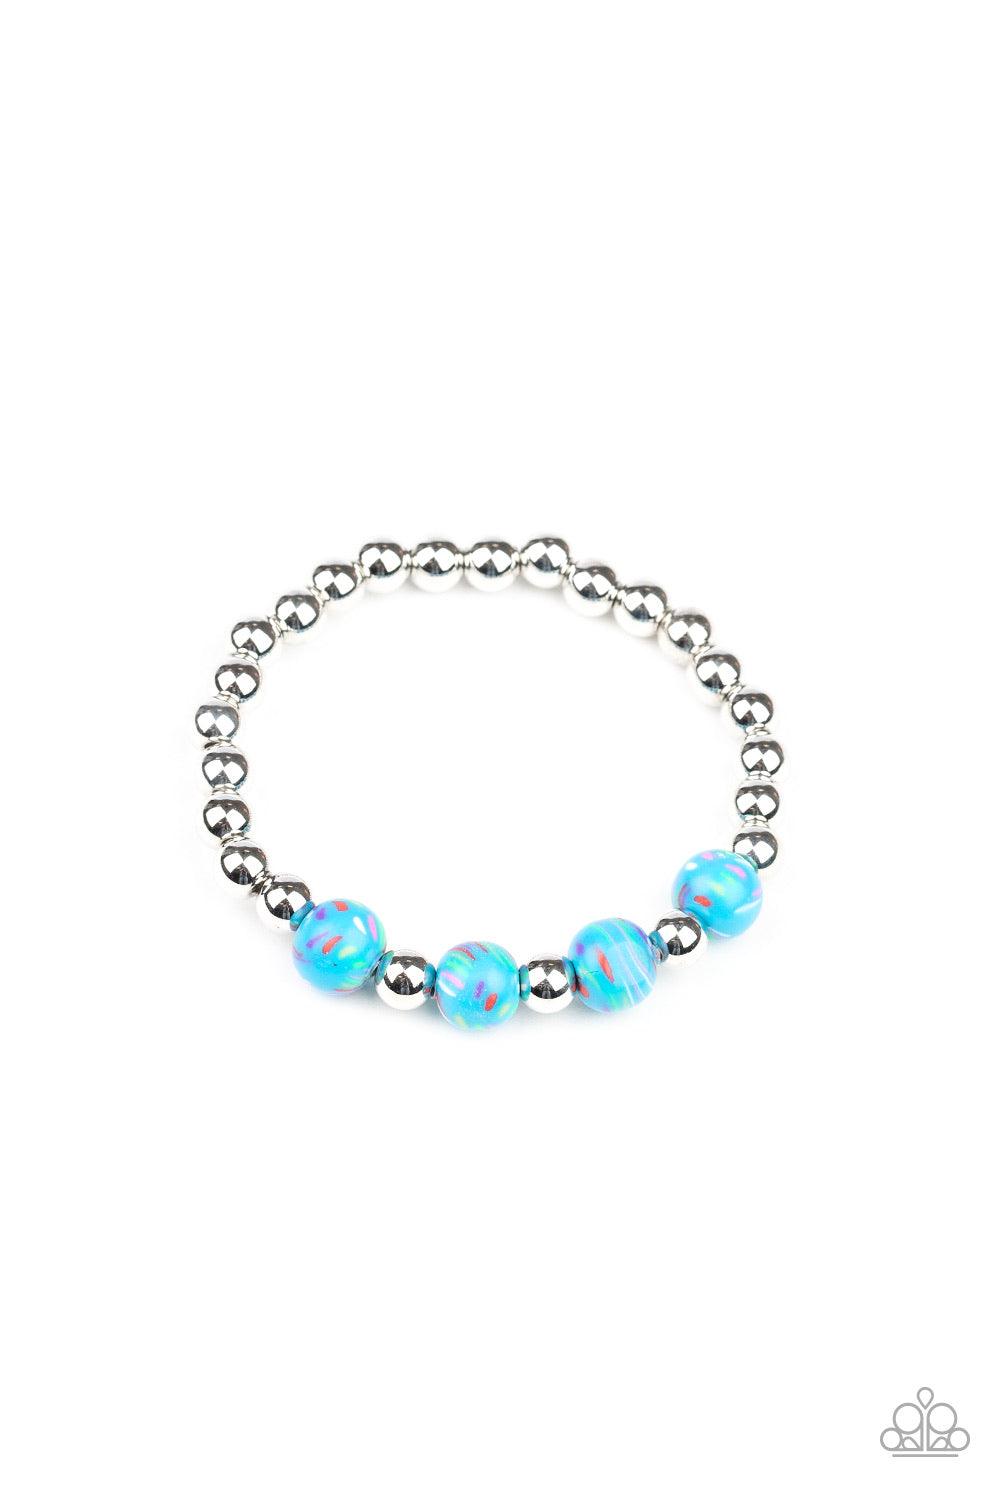 Starlet Shimmer Bracelet: #17 ~Blue - Beautifully Blinged